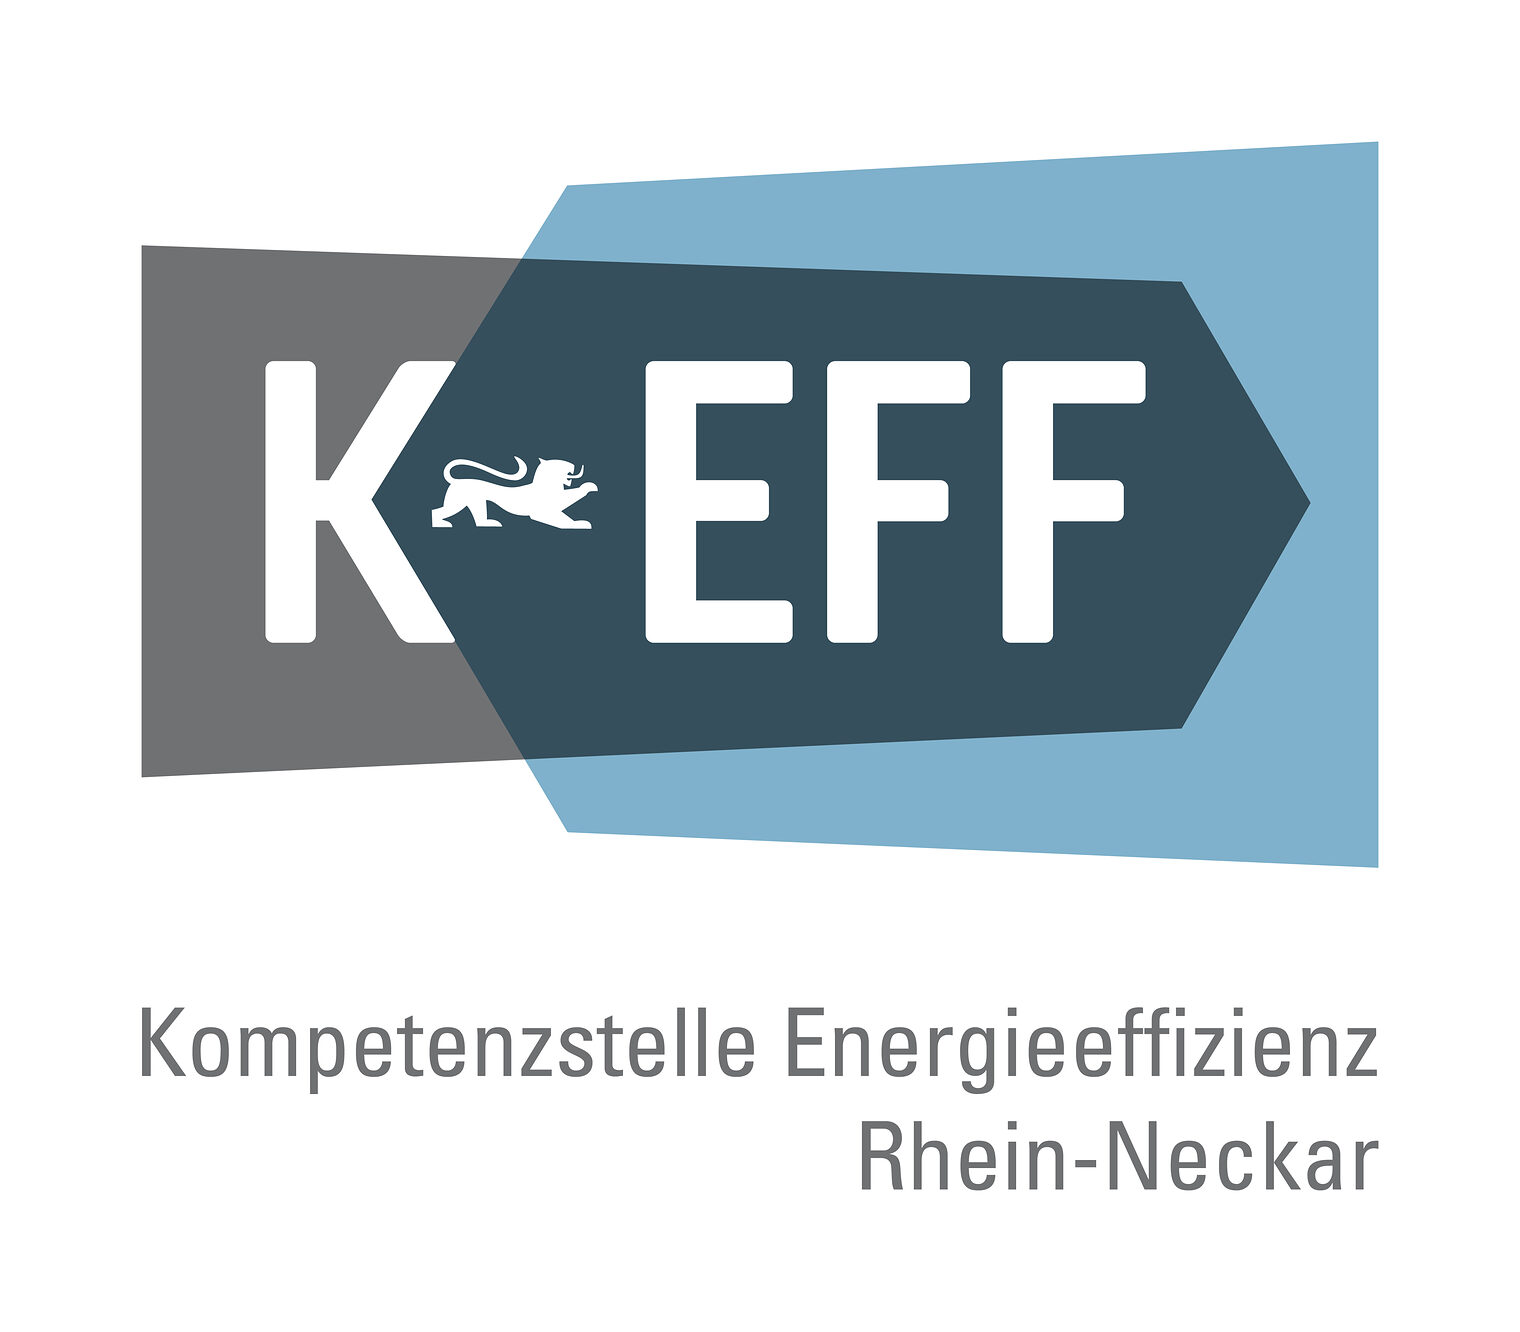 Logo der Komtetenzstelle Energieeffizienz Rhein-Neckar Zwei Pfeile die ineinander gehen. Einer ist blau der andere grau. Auf dem grauen Pfeil steht KEFF